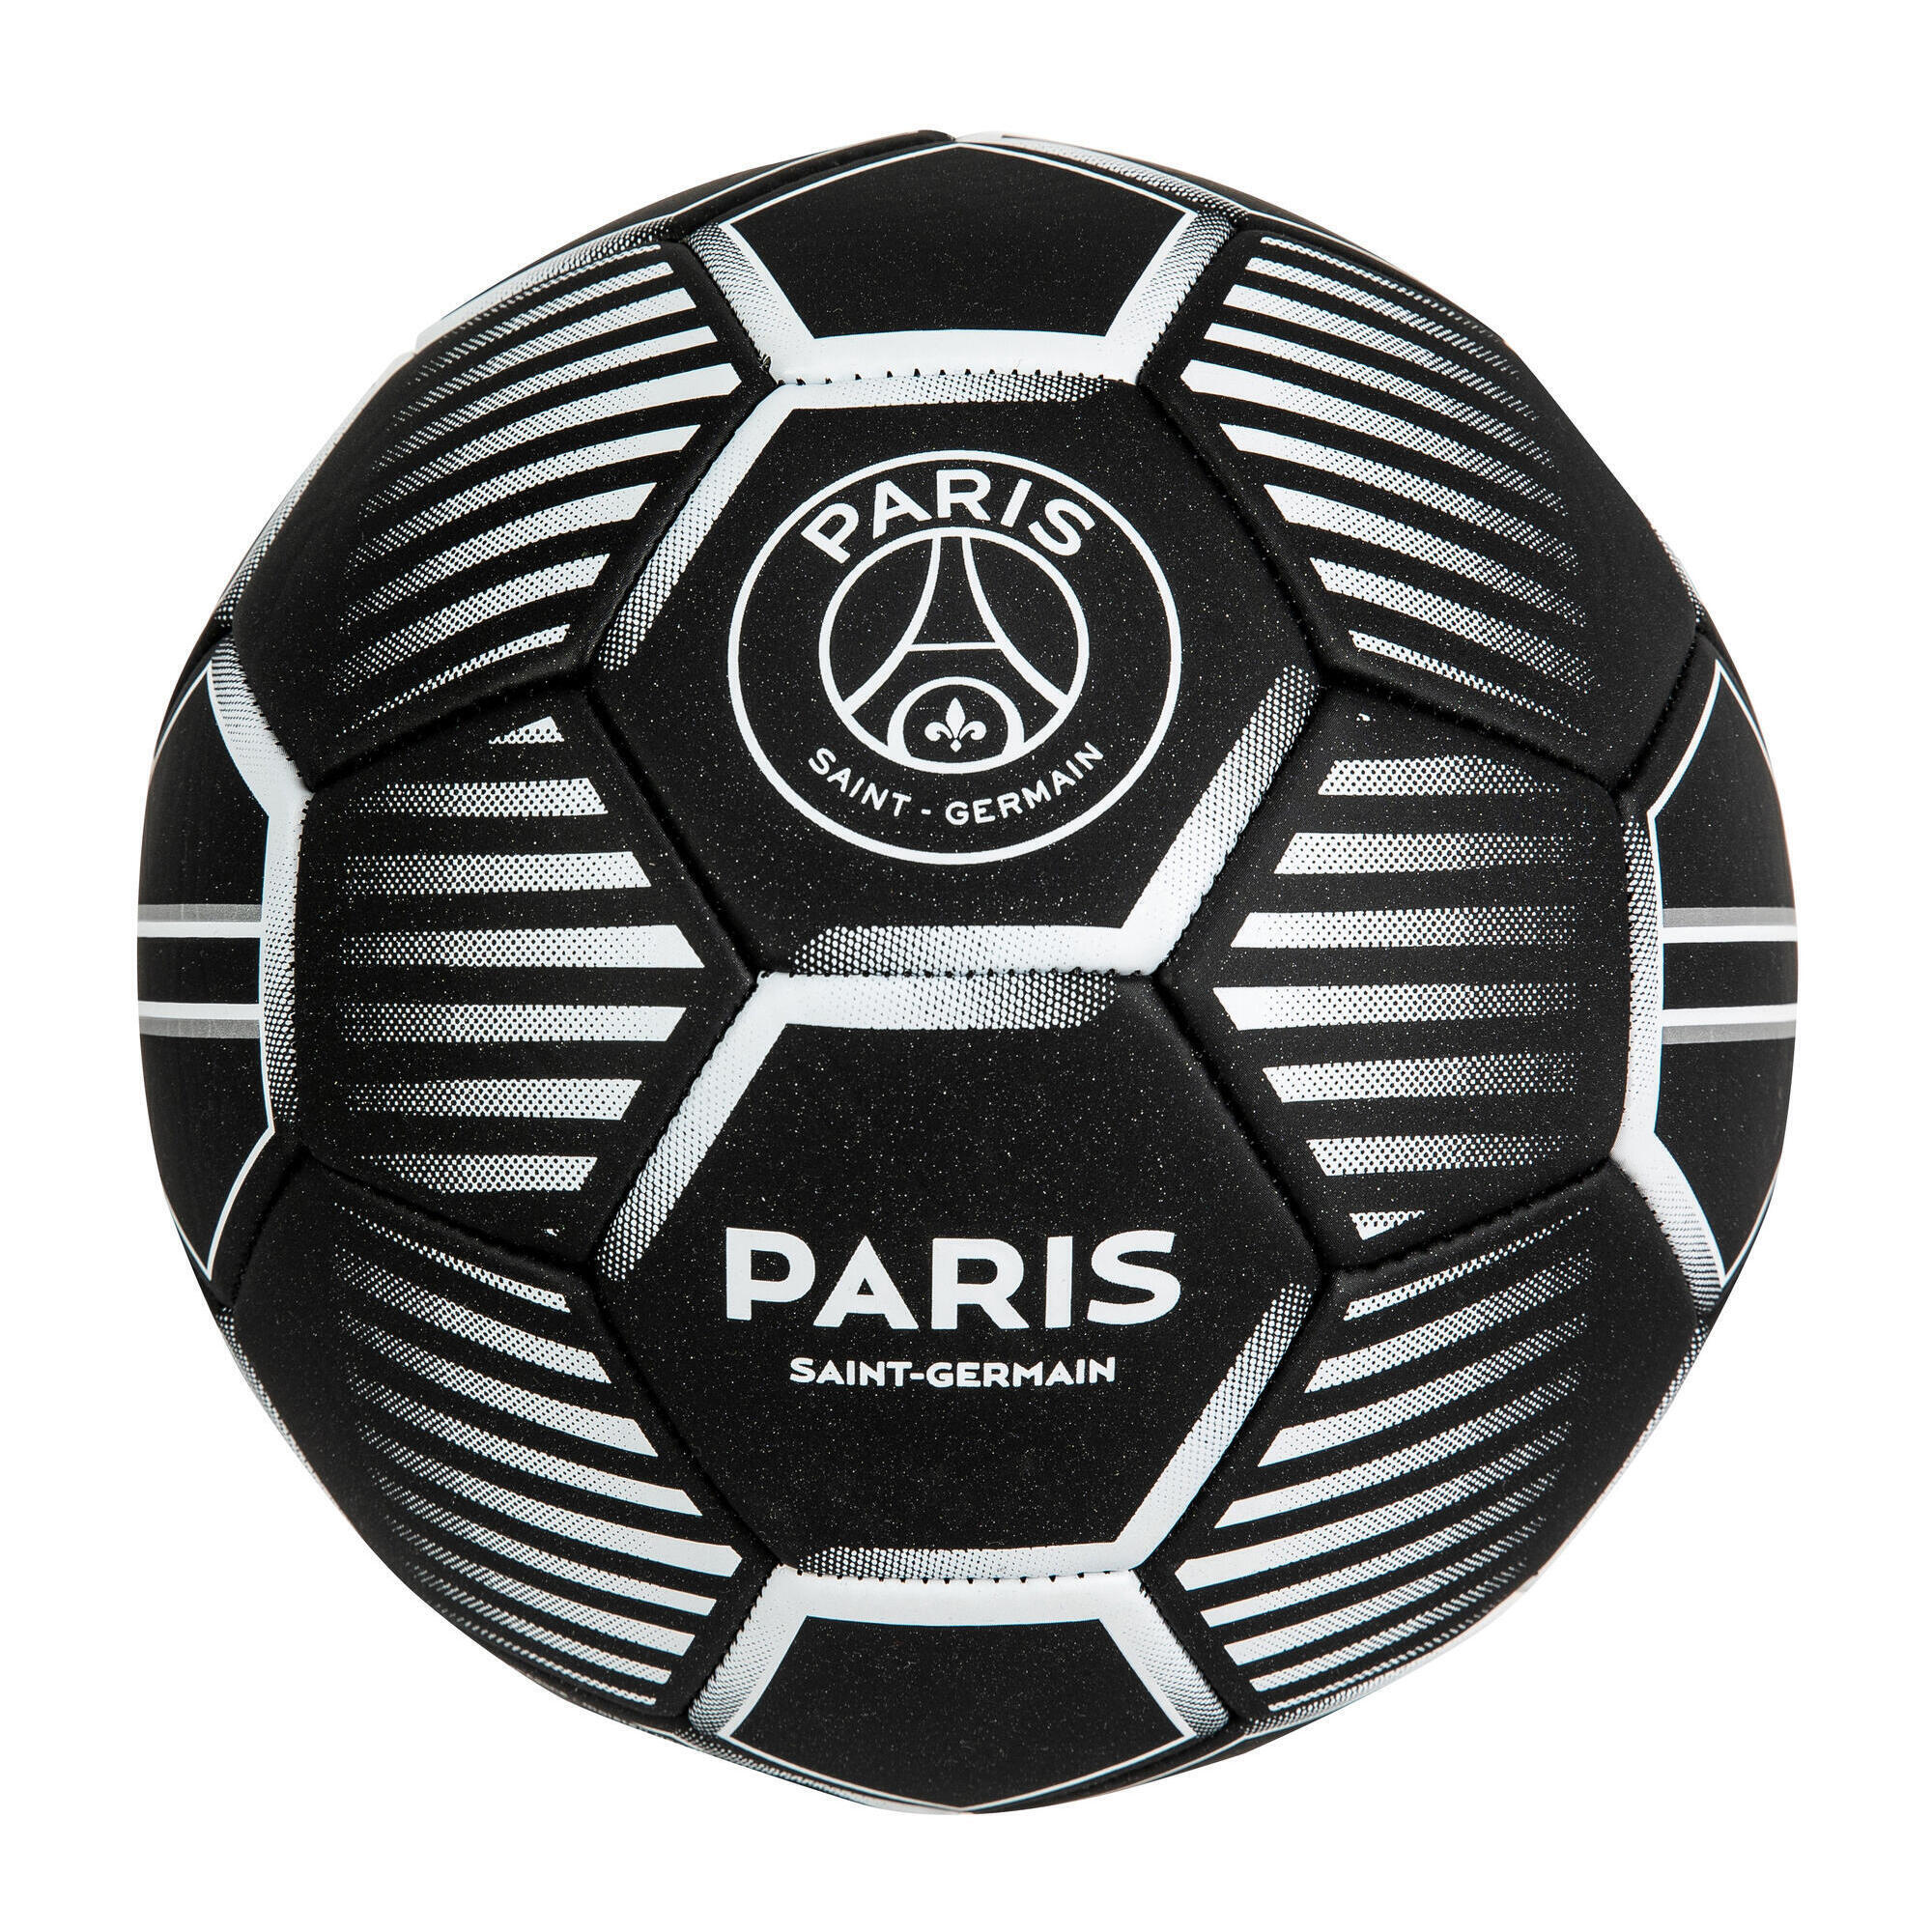 Ballon PSG - Collection officielle PARIS SAINT GERMAIN - Taille 5 PSG